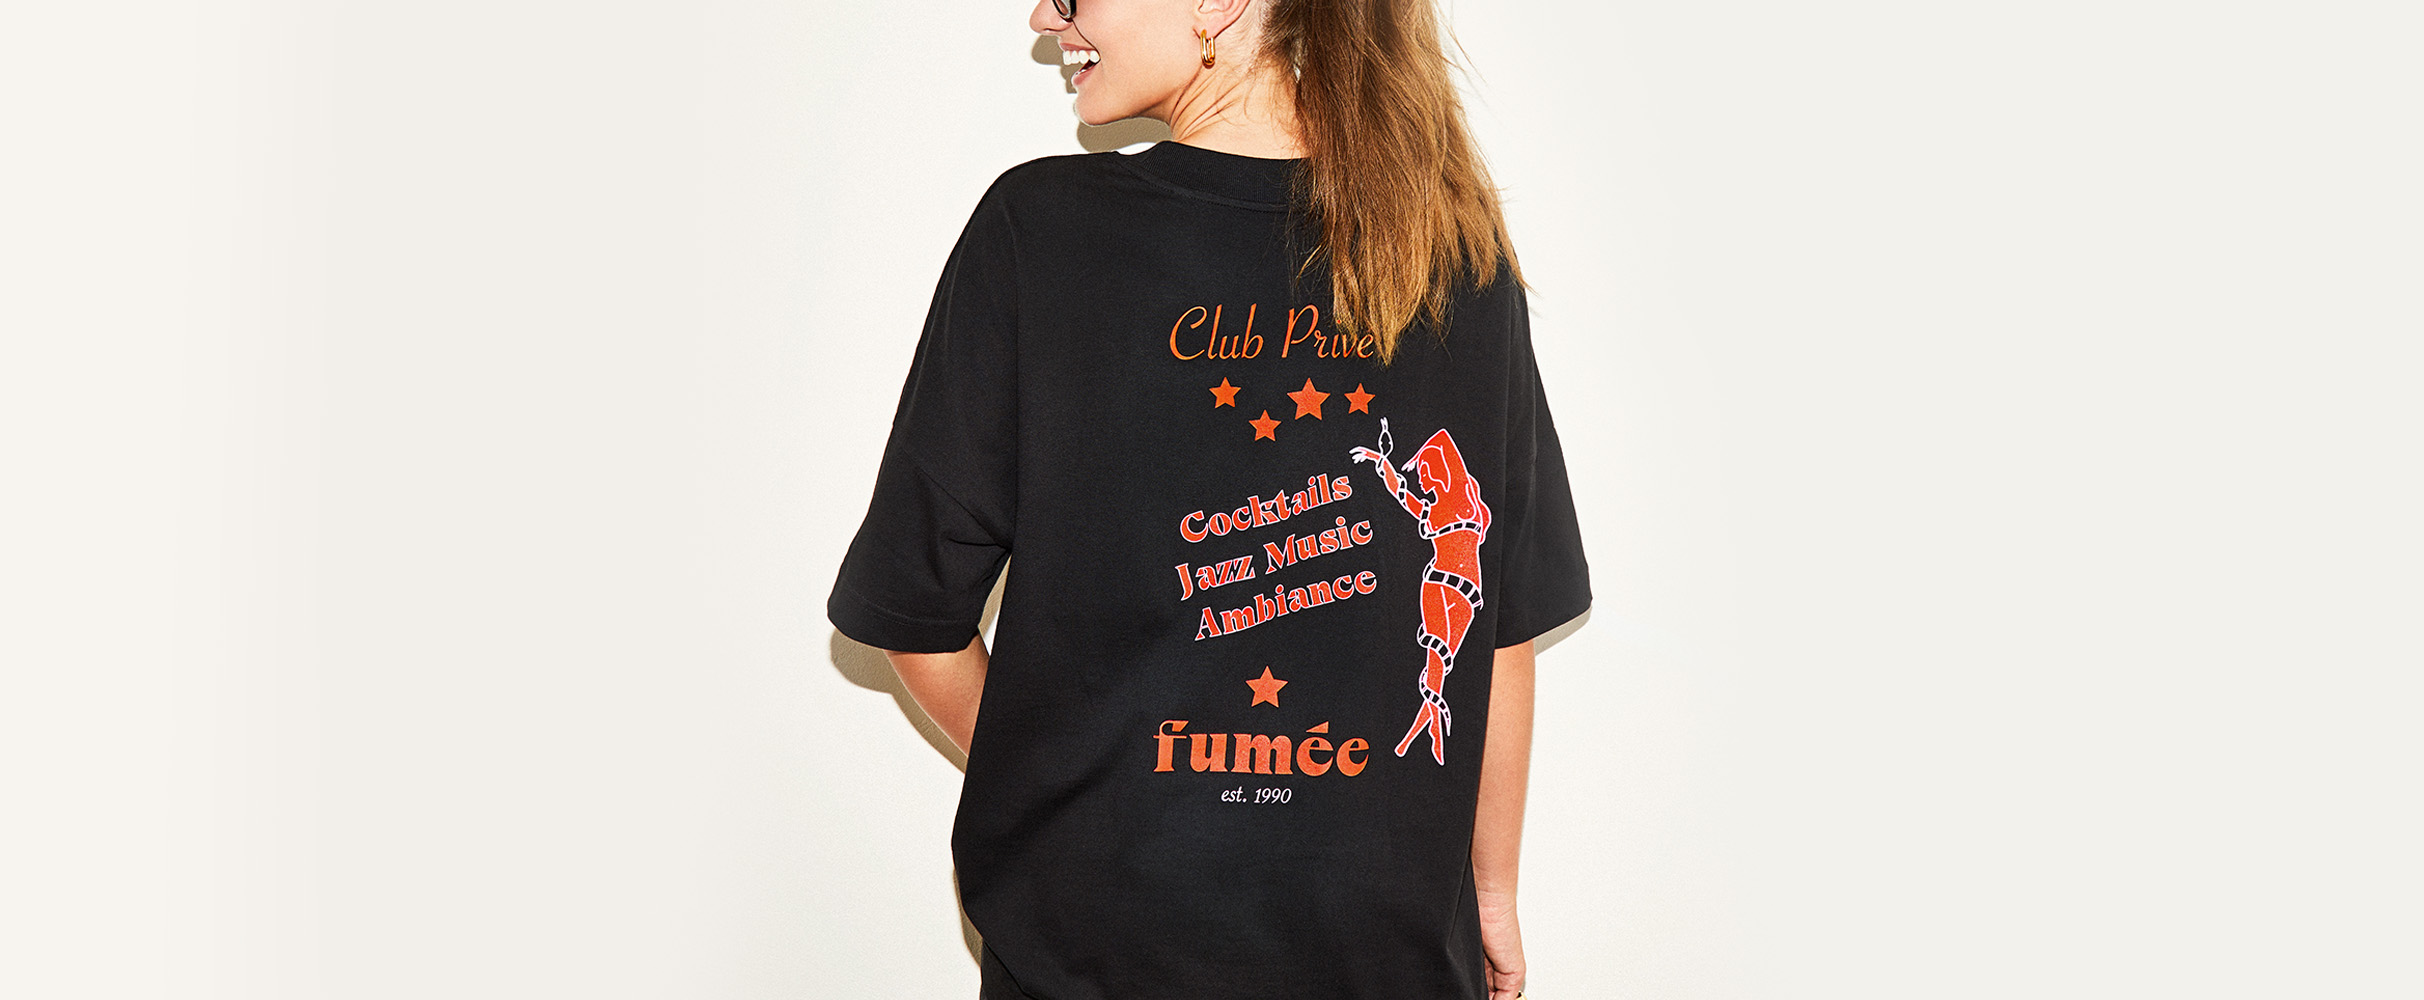 Wil je hebben: &C's statement T-shirts in samenwerking met modemerk Fumée